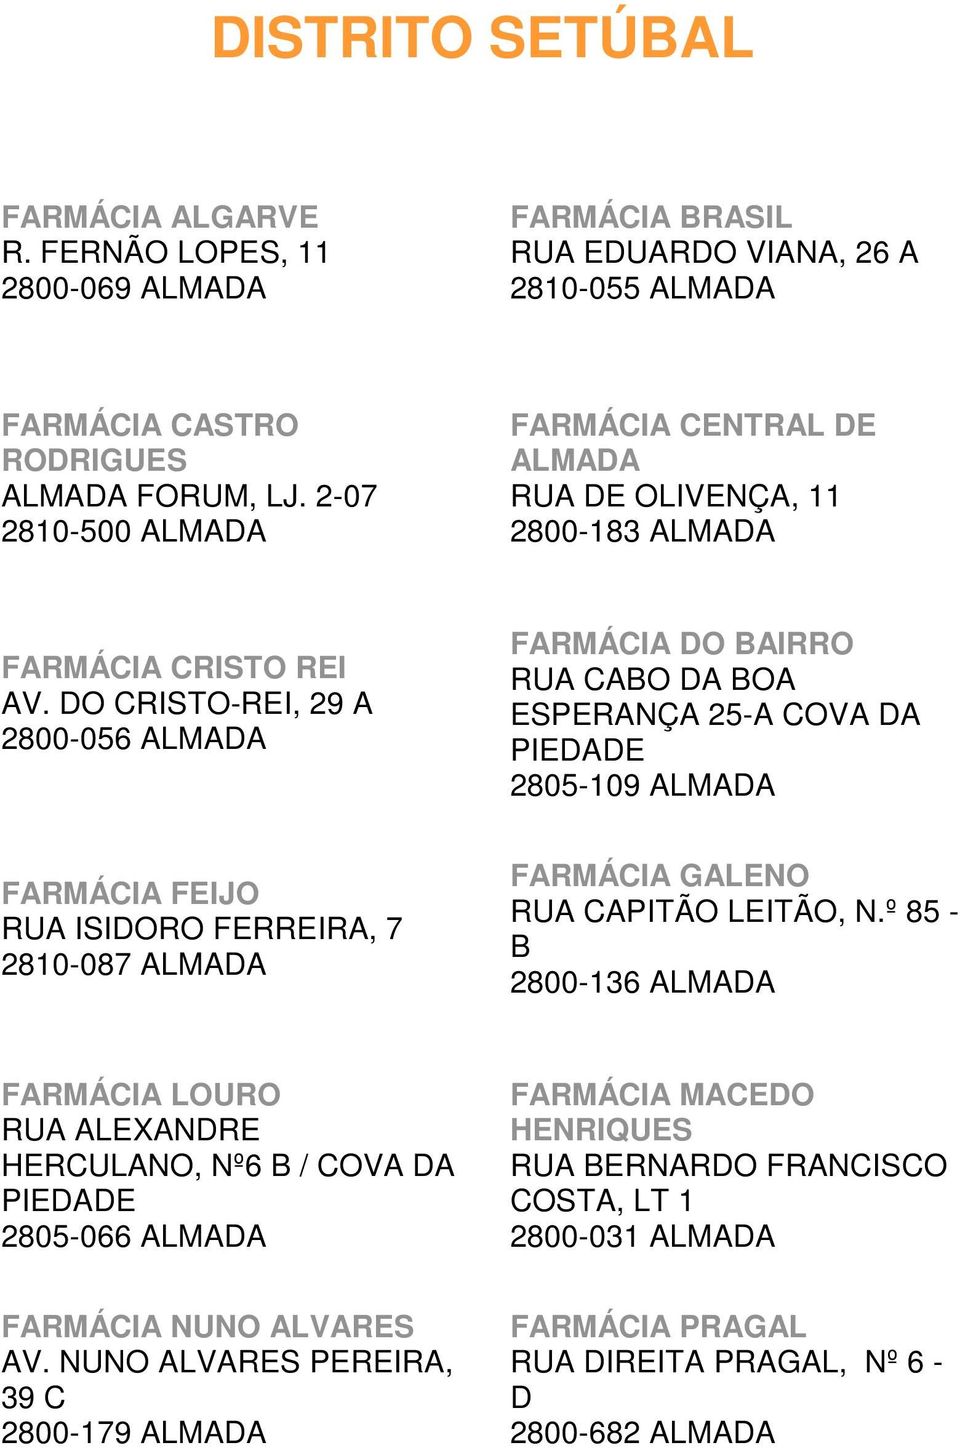 DO CRISTO-REI, 29 A 2800-056 ALMADA FARMÁCIA DO BAIRRO RUA CABO DA BOA ESPERANÇA 25-A COVA DA PIEDADE 2805-109 ALMADA FARMÁCIA FEIJO RUA ISIDORO FERREIRA, 7 2810-087 ALMADA FARMÁCIA GALENO RUA